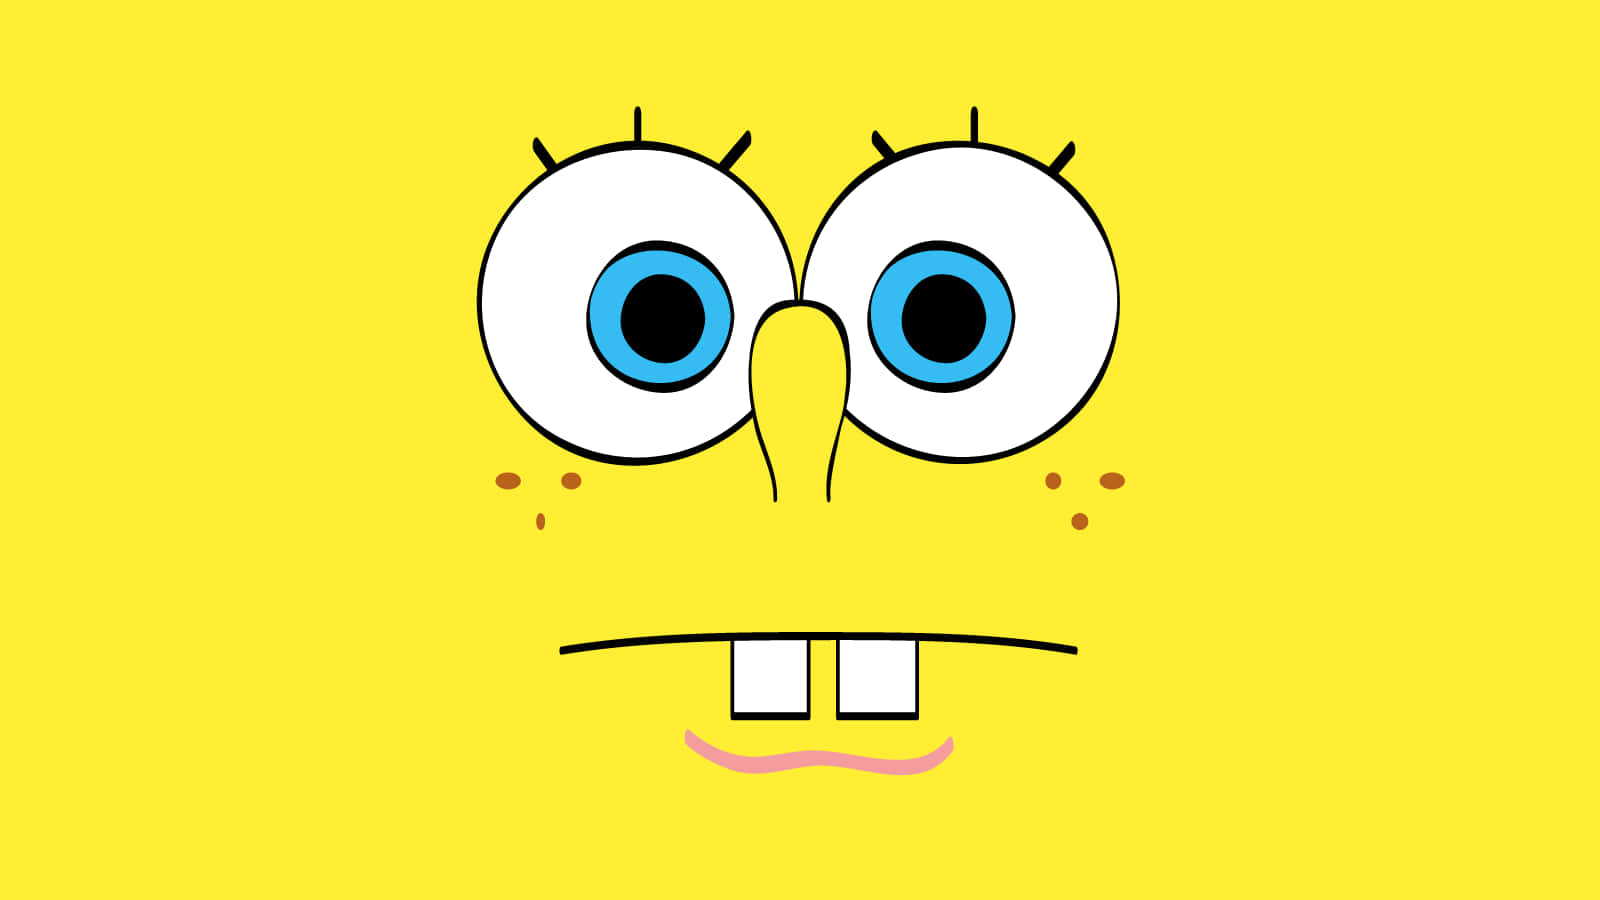 Gedin Dator En Lite Mer Havsinfluerad Känsla Med Denna Färgglada Spongebob-estetiska Bakgrundsbild. Wallpaper